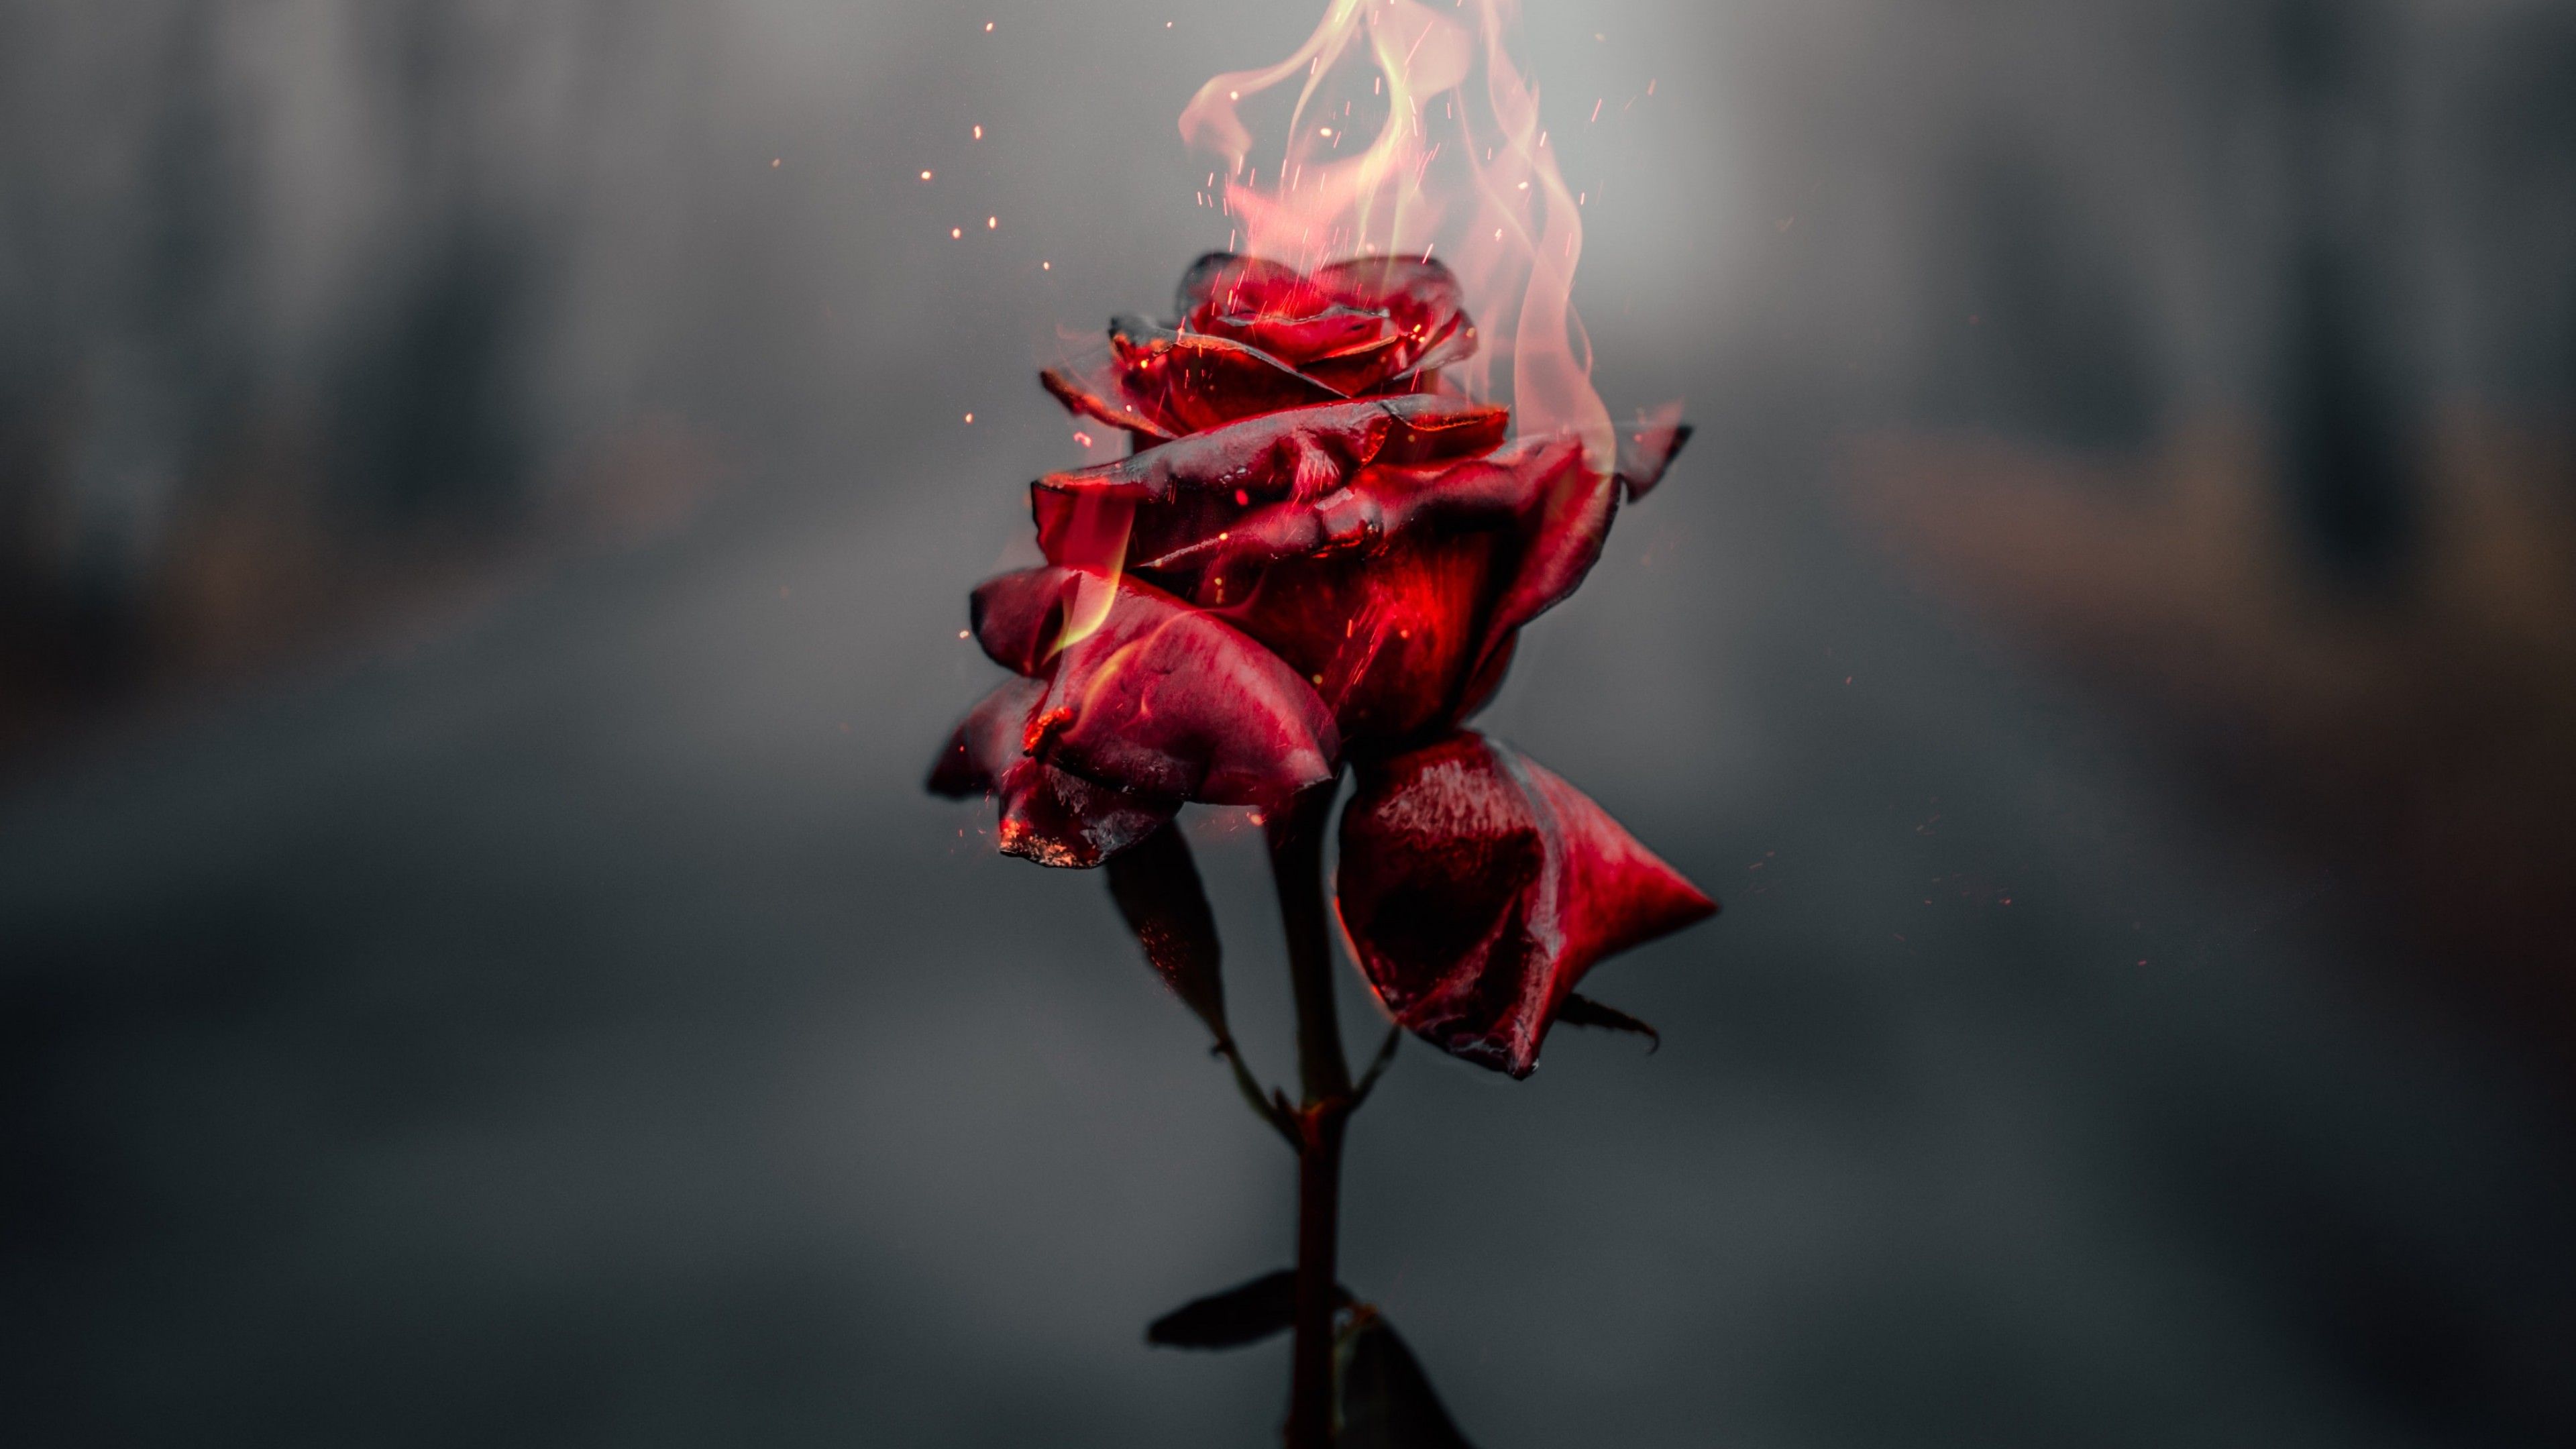 Rose flower 4K Wallpaper, Fire, Burning, Dark, Flowers,